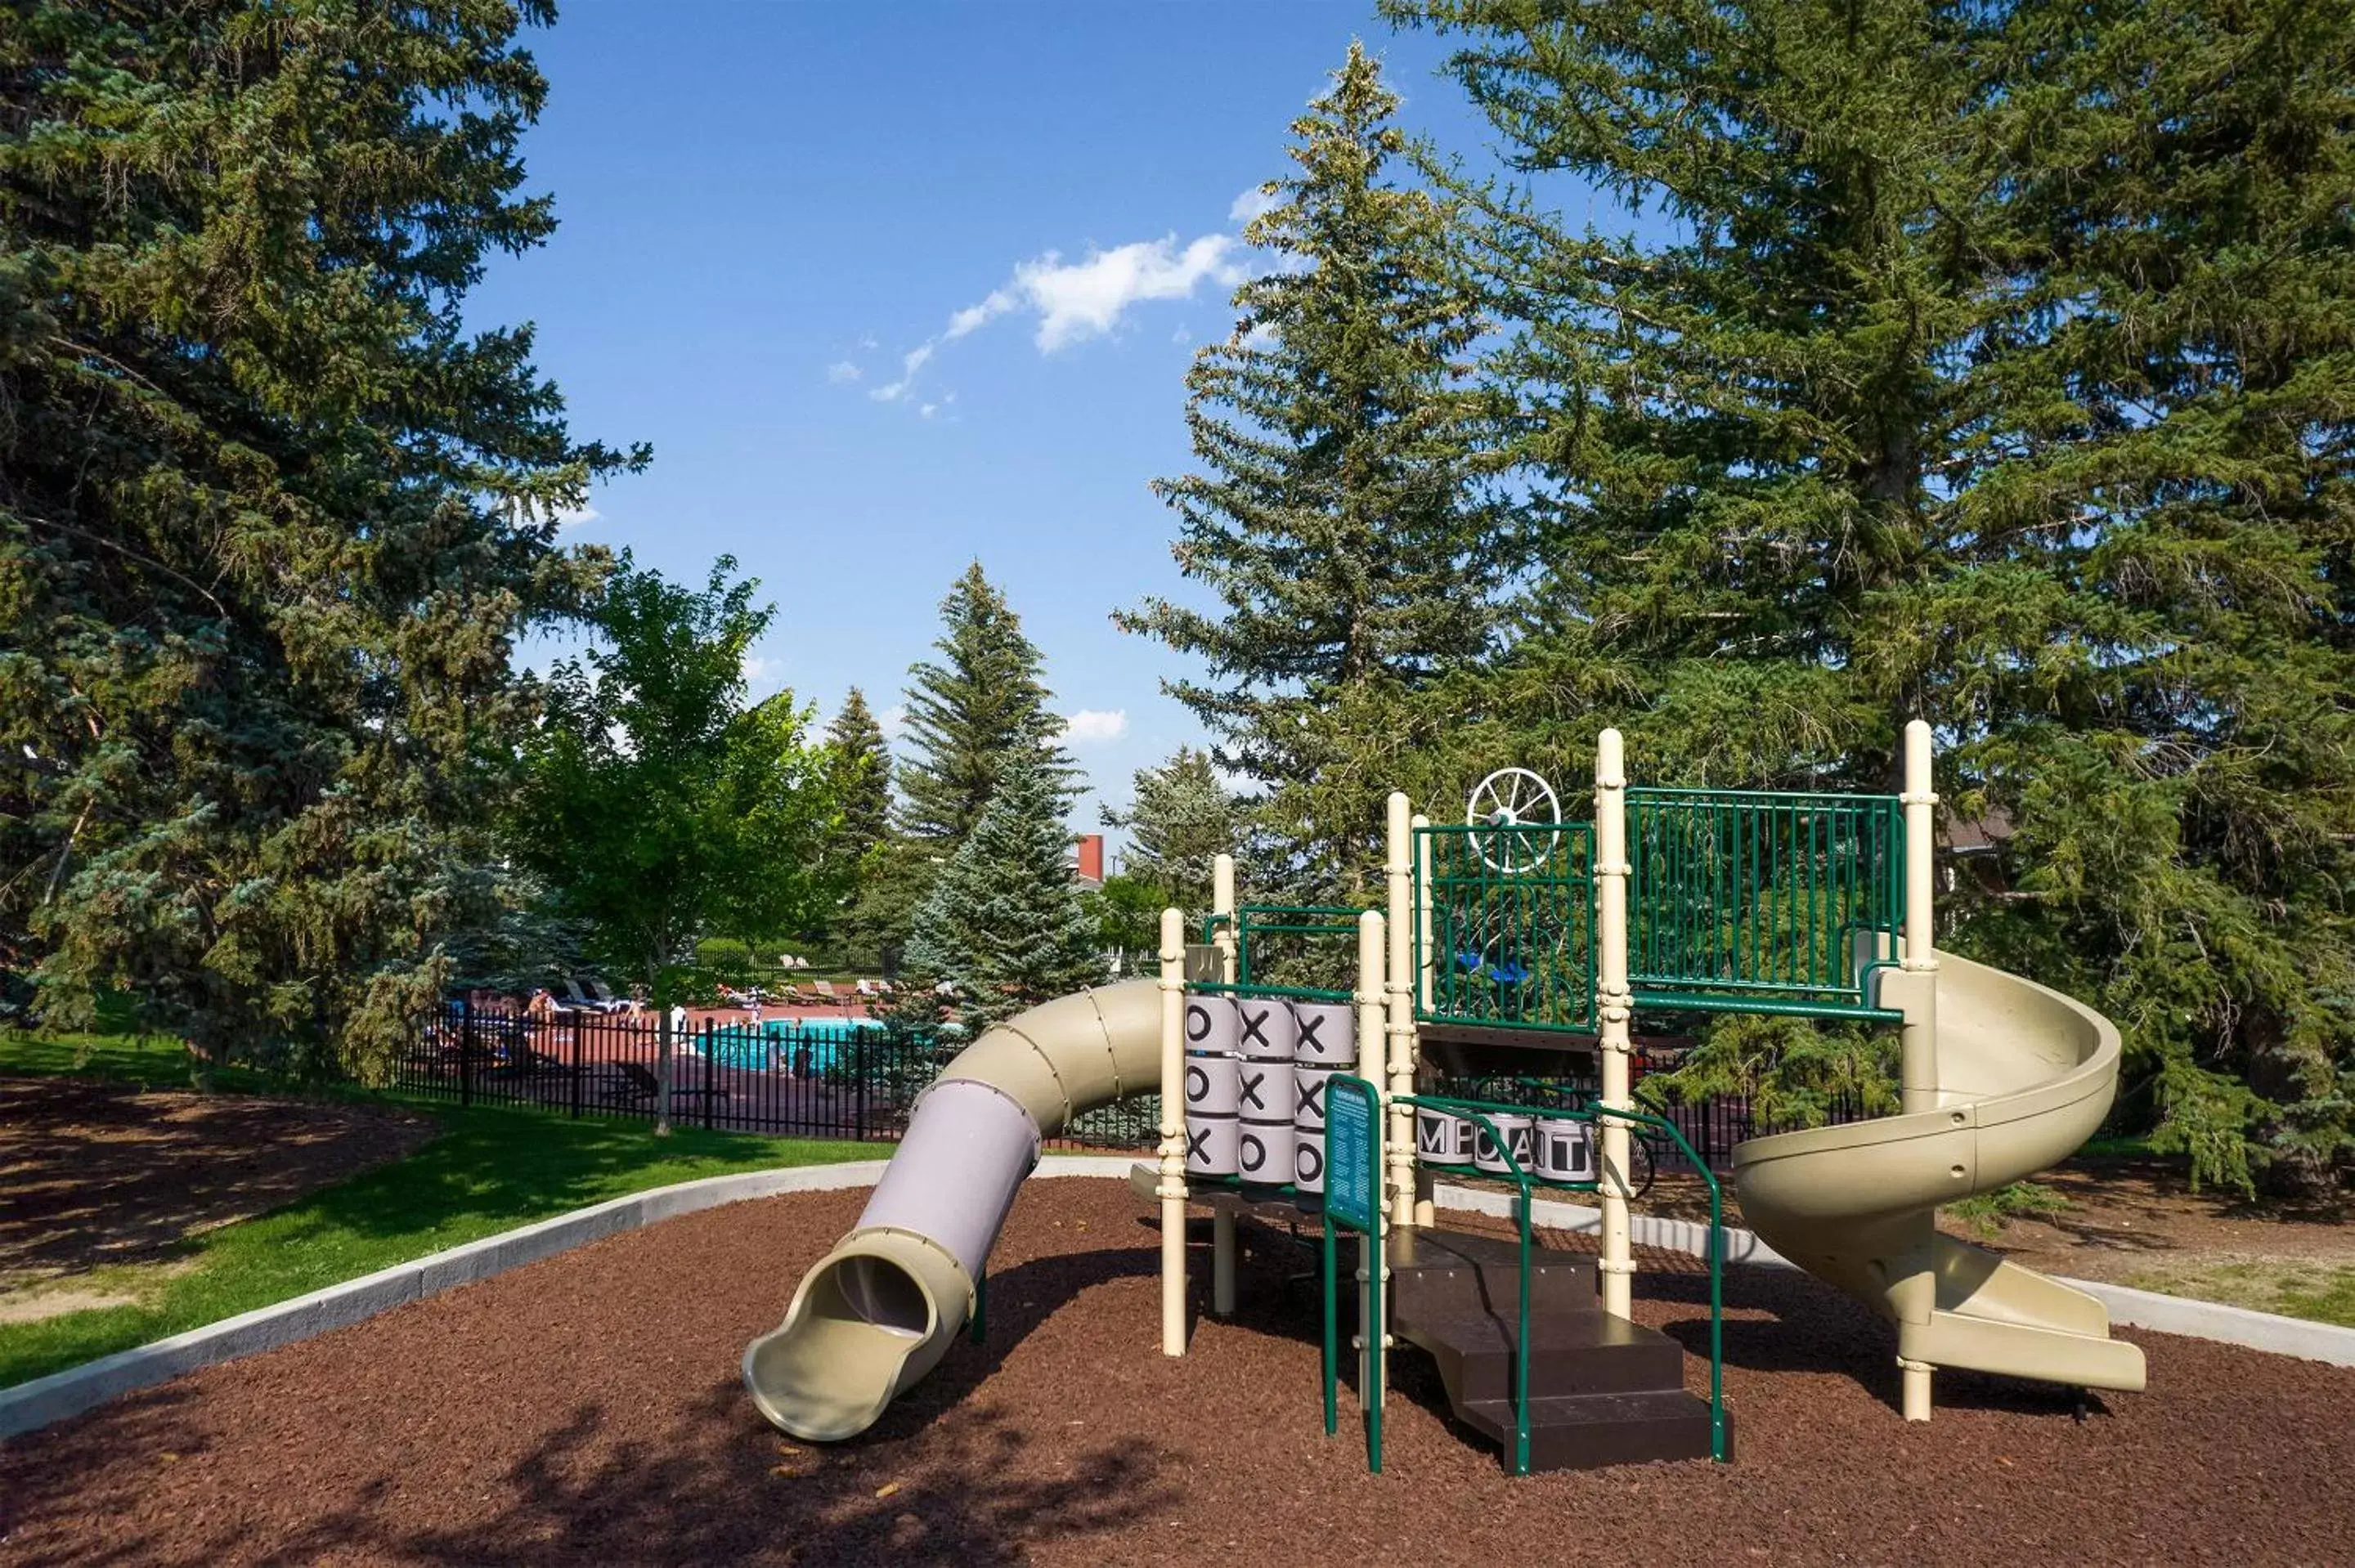 Children play ground, Children's Play Area in Little America Hotel & Resort Cheyenne